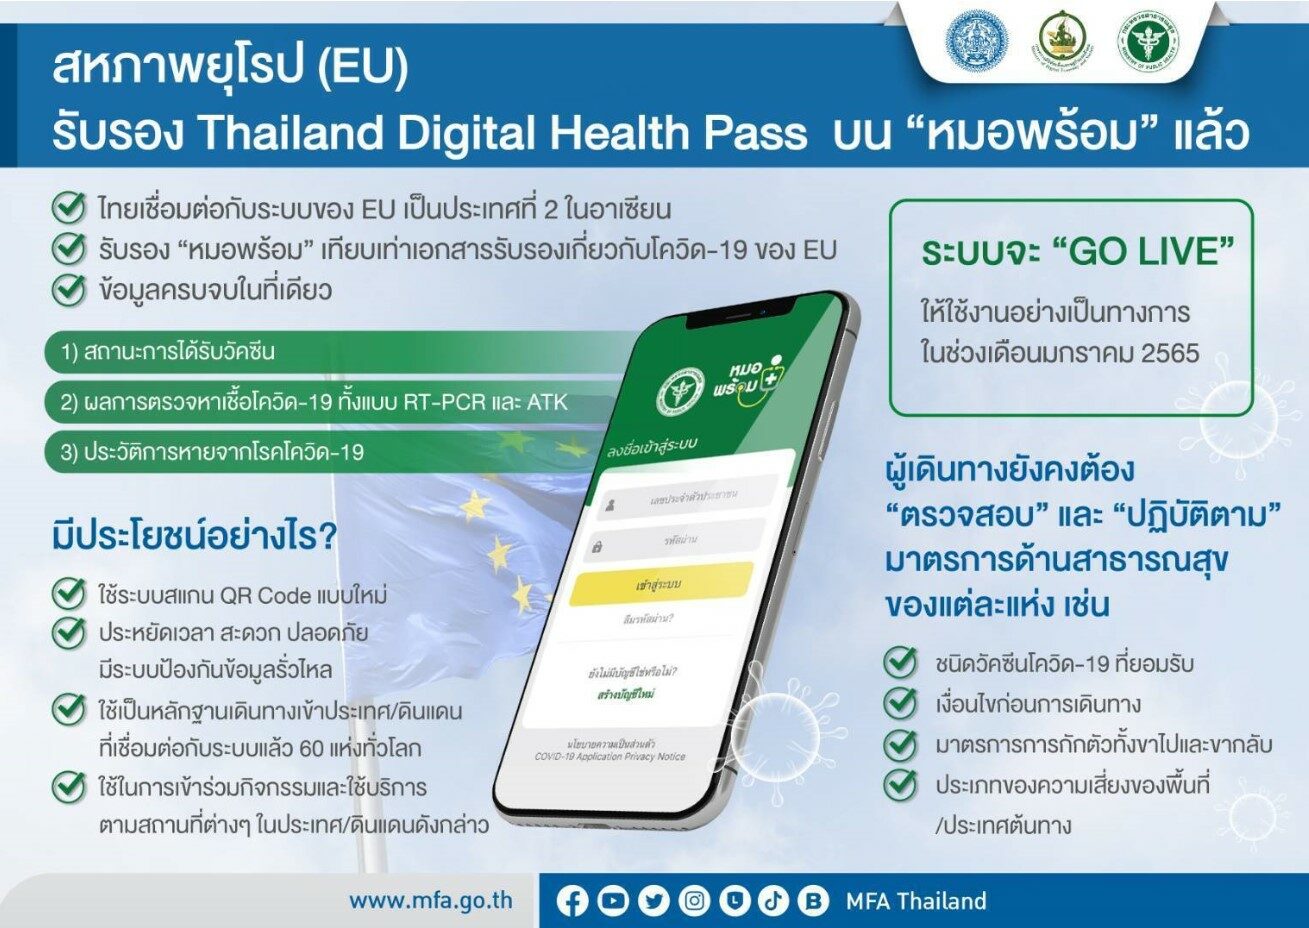 อียูรับรอง Thailand Digital Health Pass บน “หมอพร้อม” ใช้งานได้ ม.ค. ปีหน้า